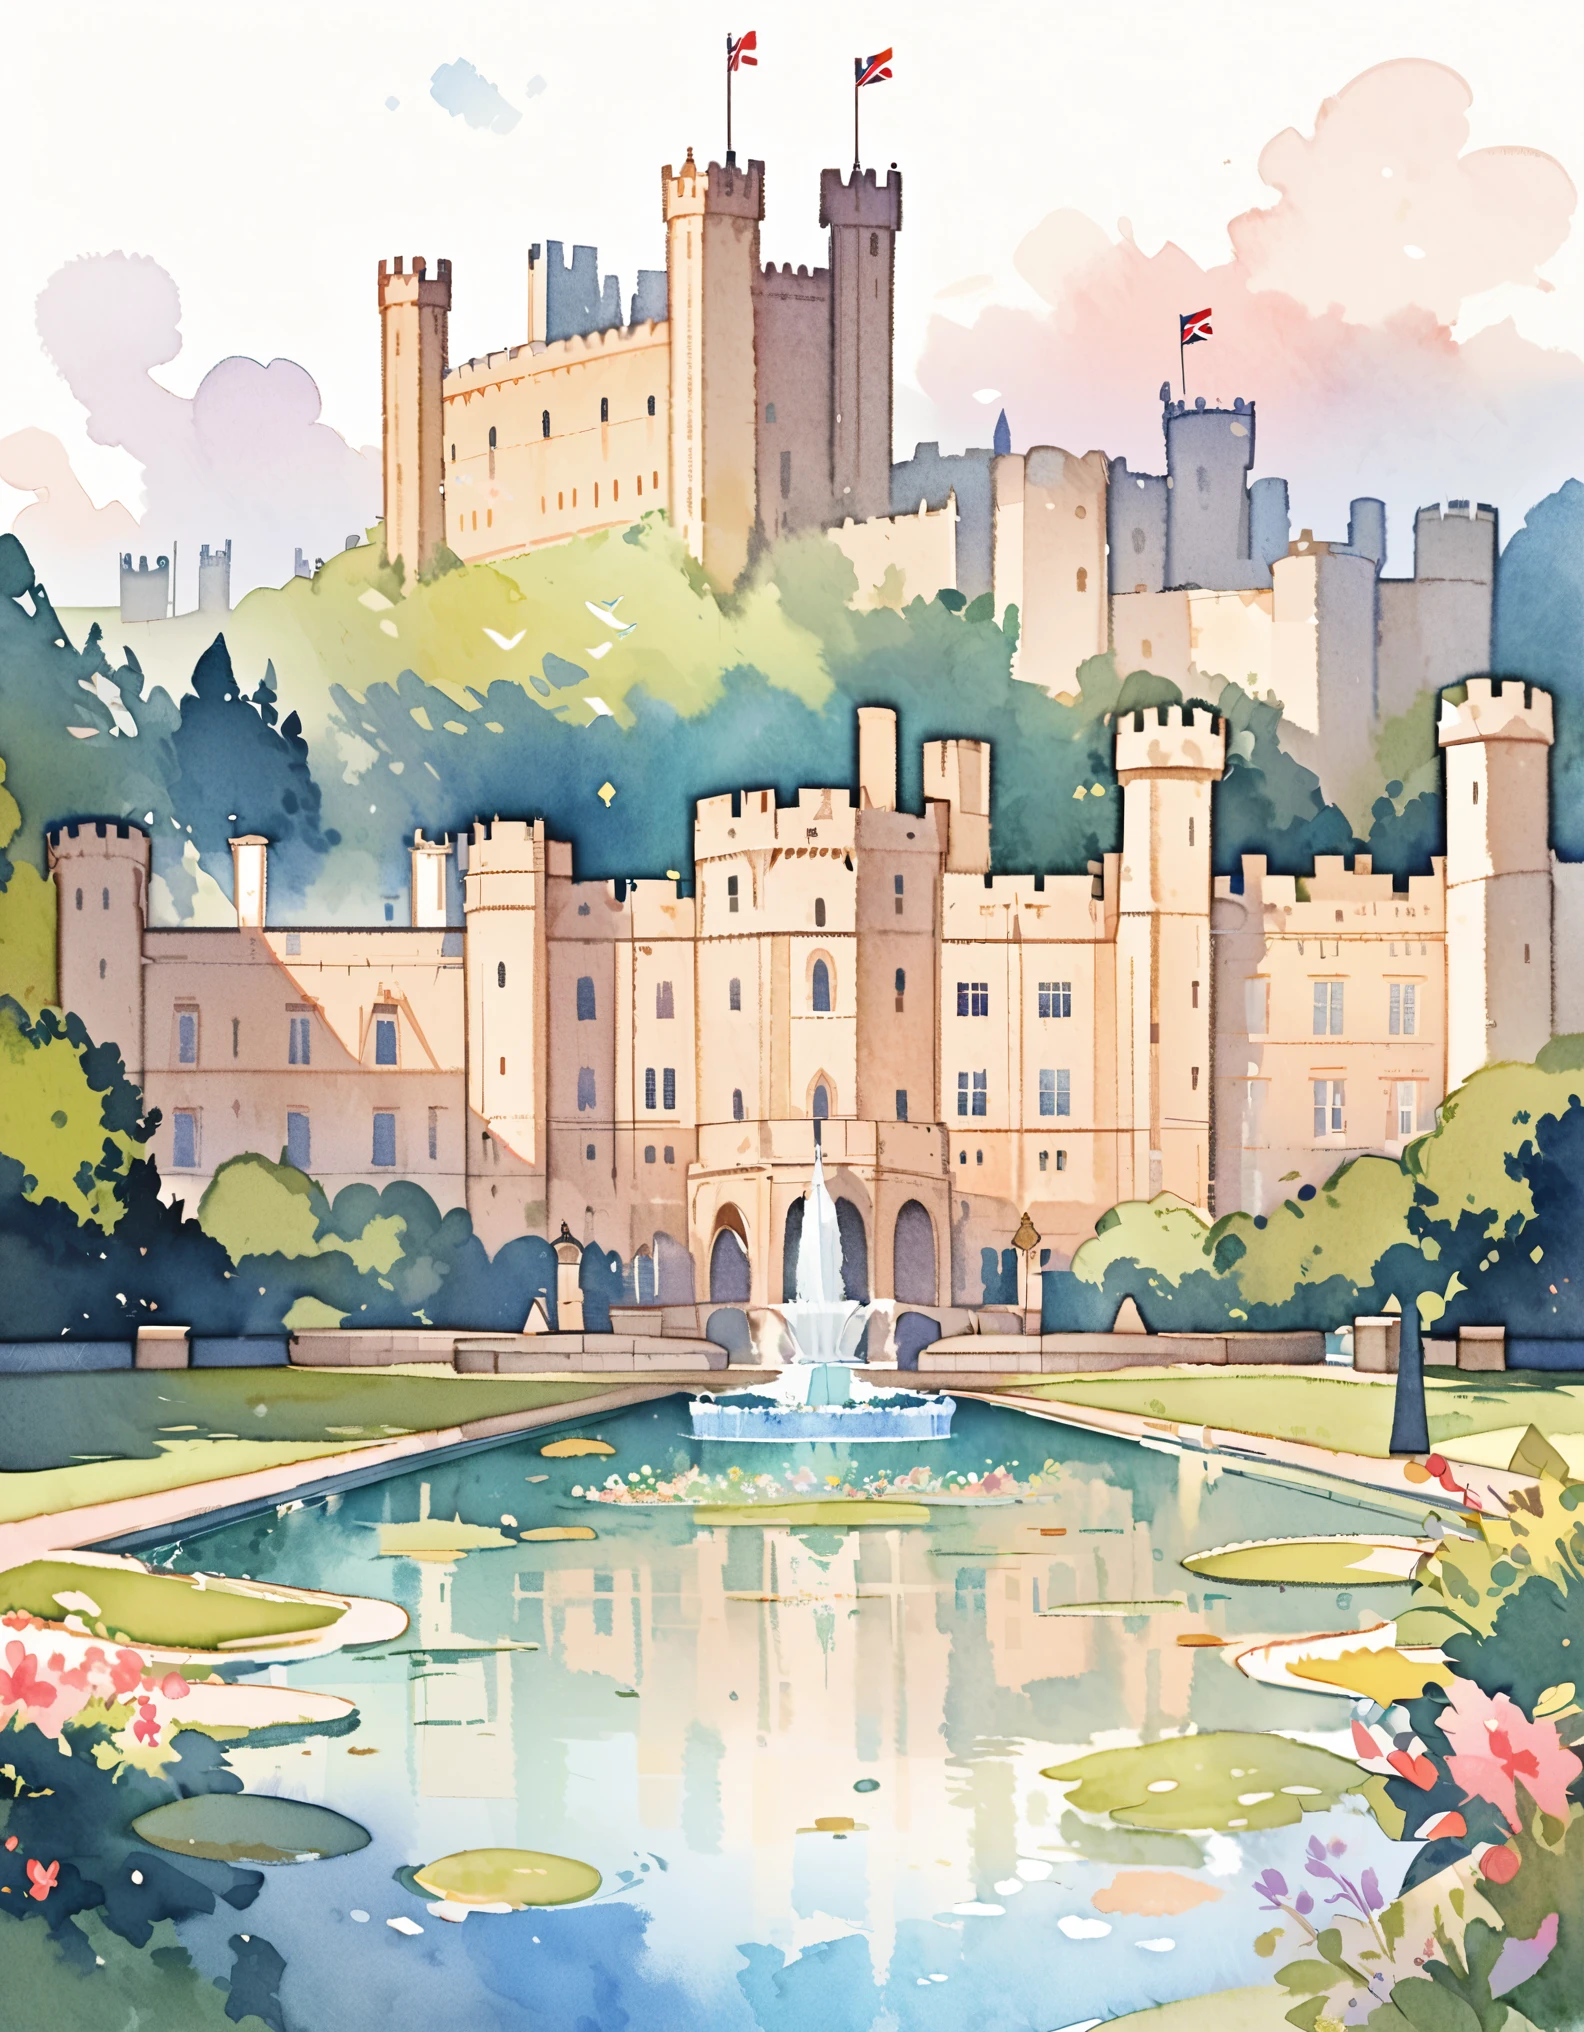 قلعة وندسور, المقر الملكي الرسمي للعاهل البريطاني, القصر الصامت, القلاع في إنجلترا, ألوان مائية:1.2, غريب الاطوار وحساسة, مثل الرسم التوضيحي في الأطفال&#39;كتاب, فرشاة لطيفة, خافت, الألوان الفاتحة تخلق مظهرًا خياليًا.